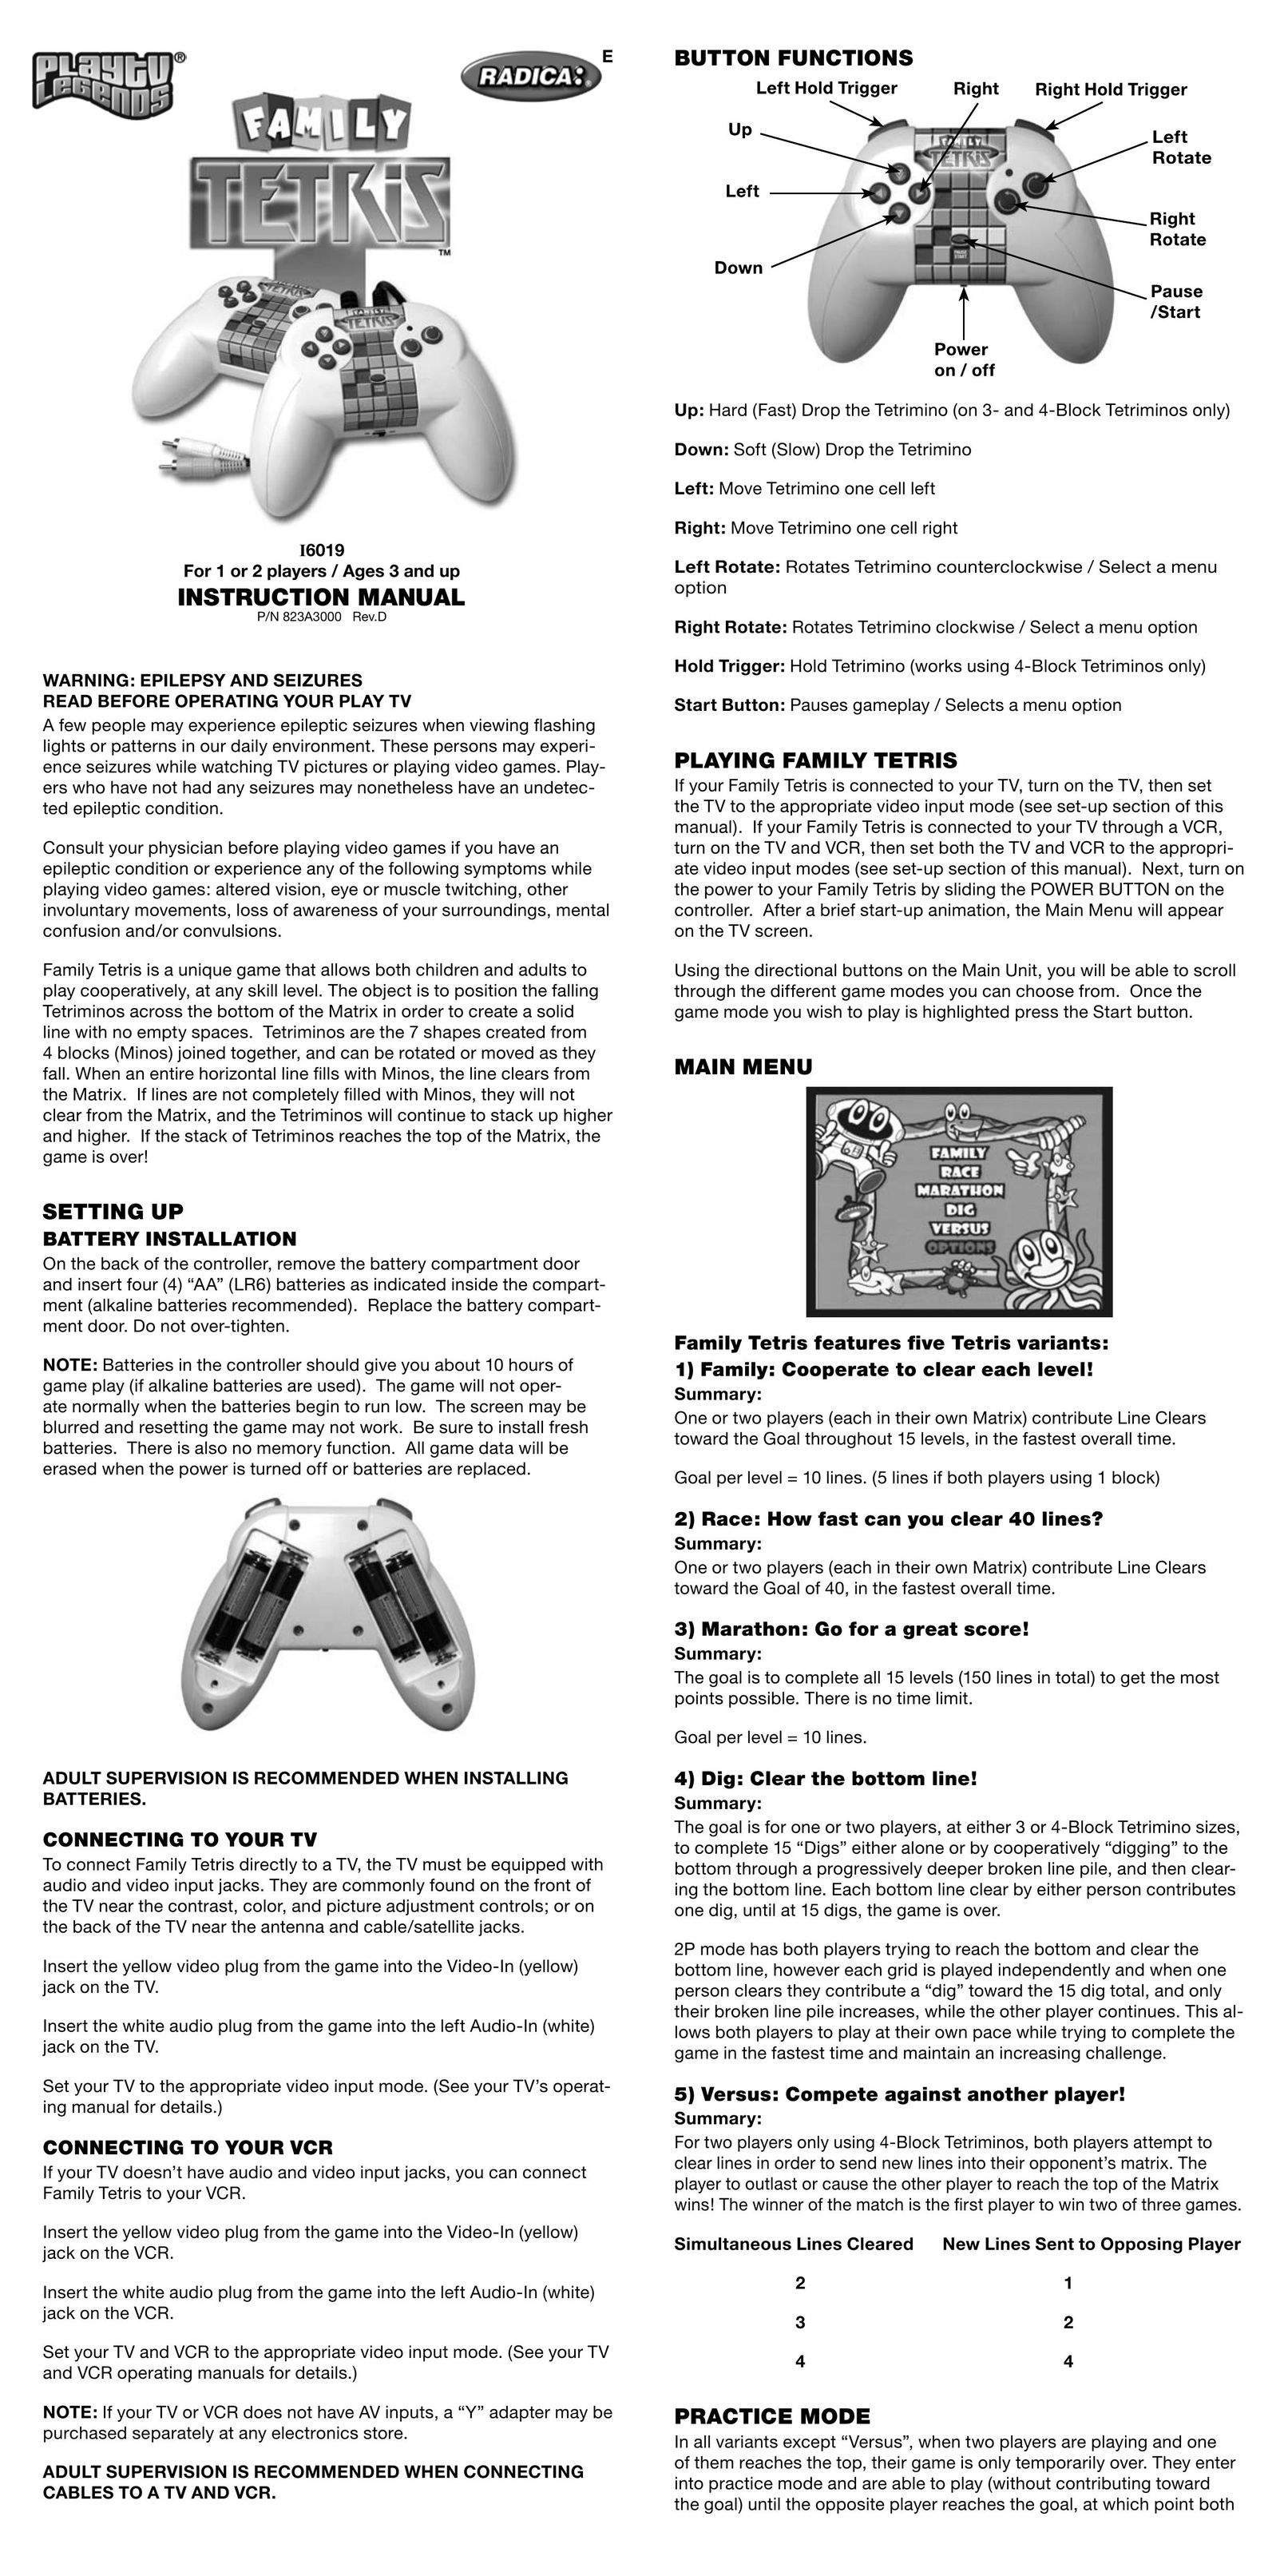 Radica Games 16019 Games User Manual